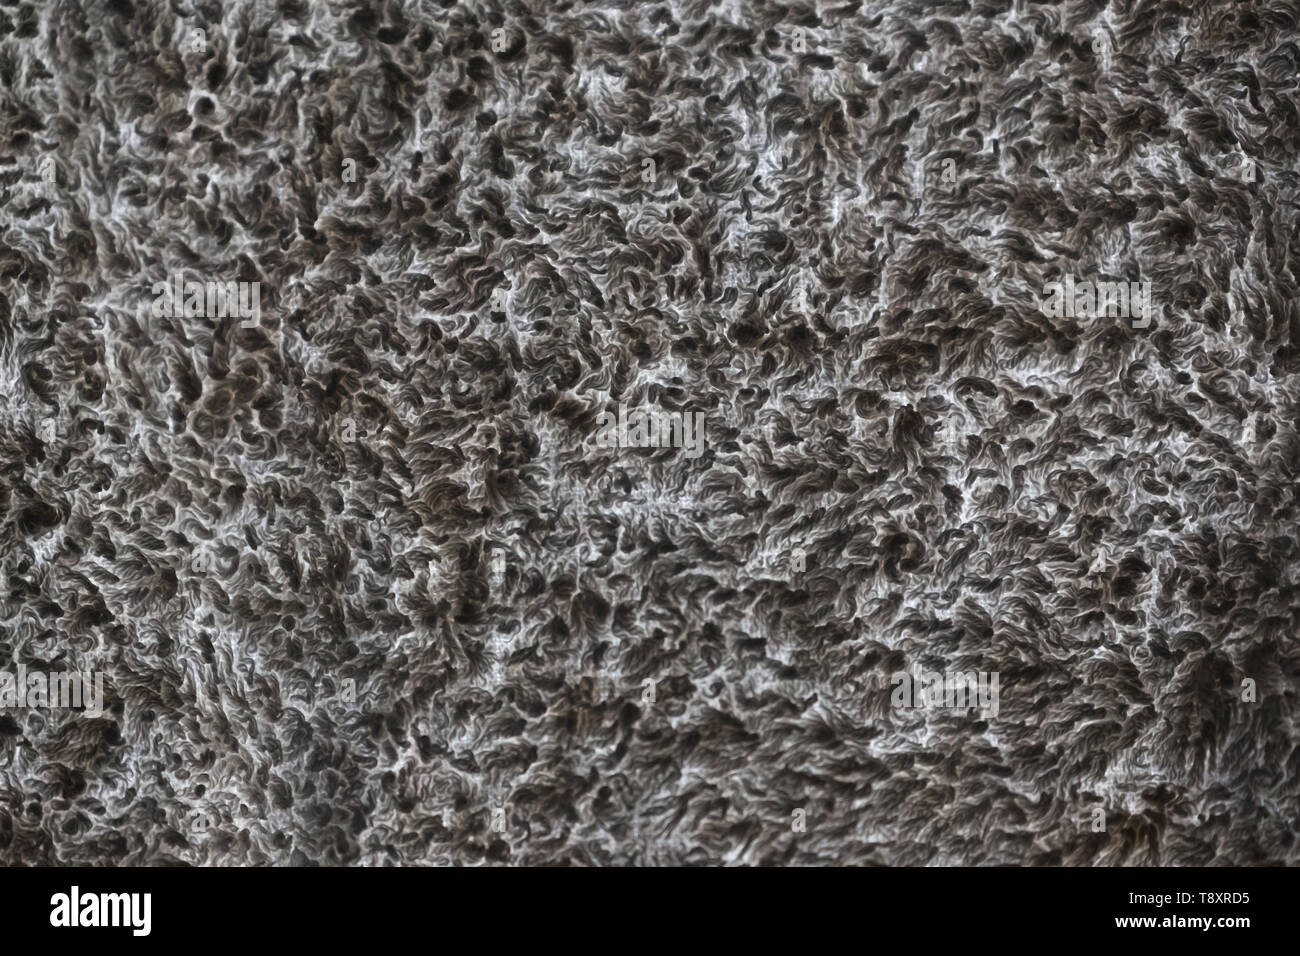 Abstract pattern ou sworls et boucles - Close-up de la lumière à travers le tissu éponge, presque monochrome. Banque D'Images